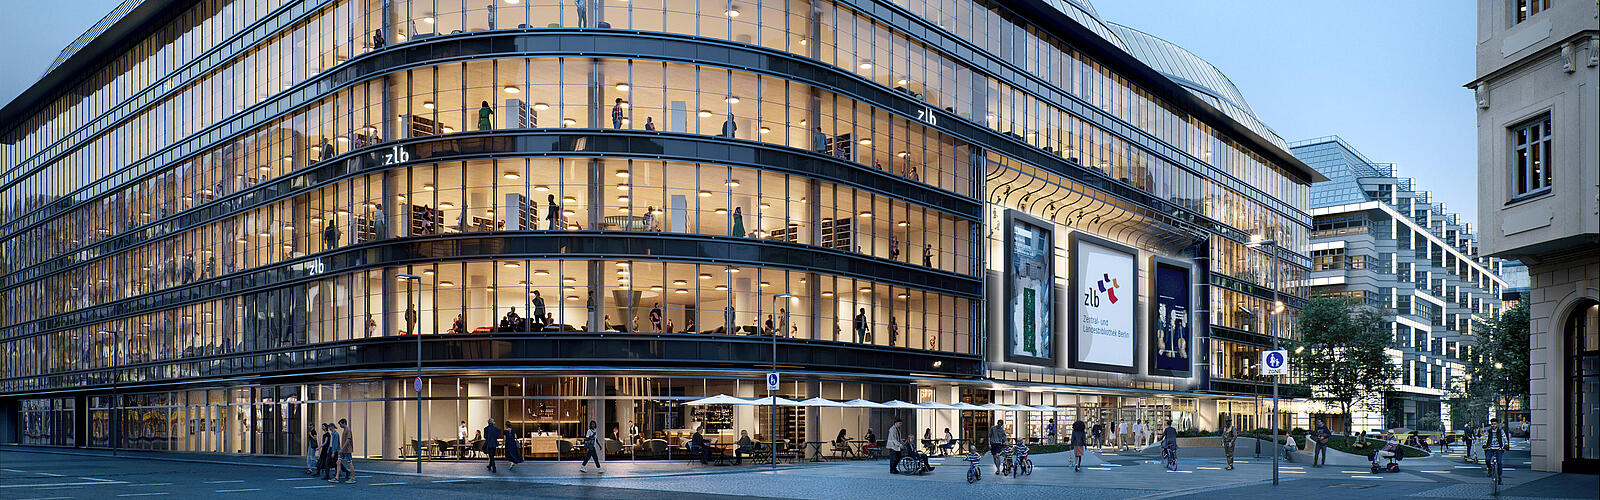 Es ist das Kaufhaus Lafayette Berlin in der Friedrichstraße abgebildet